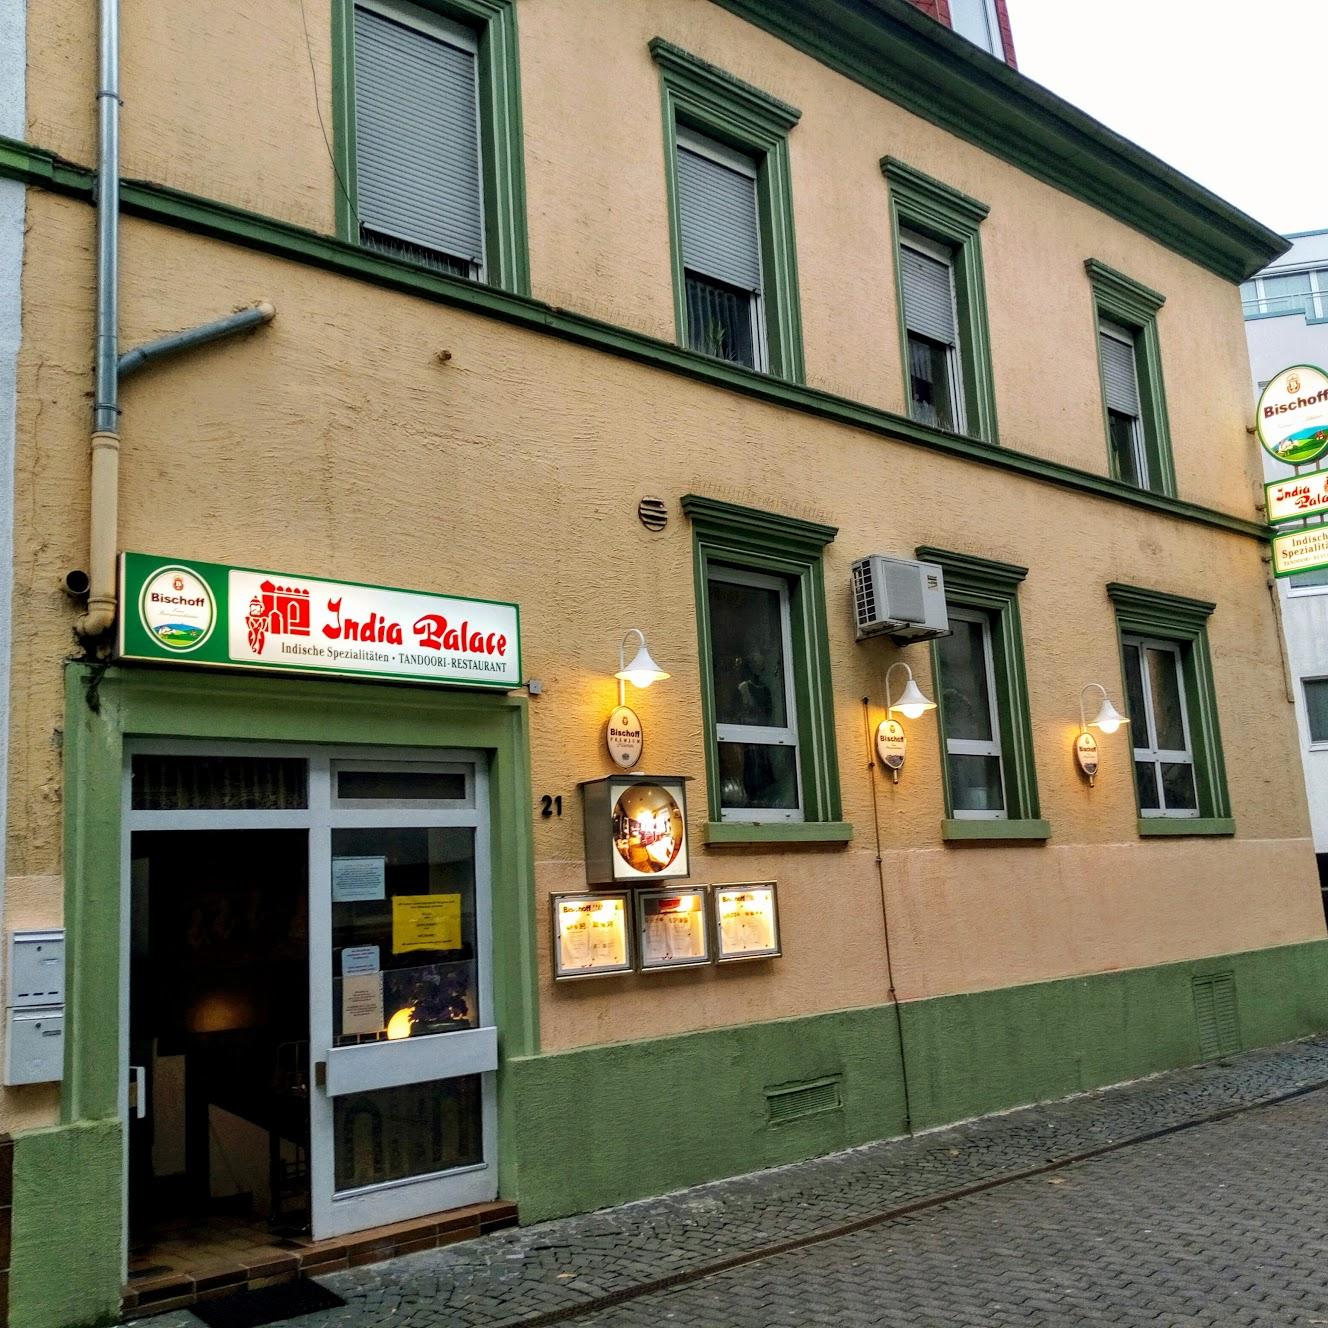 Restaurant "India Palace" in Kaiserslautern